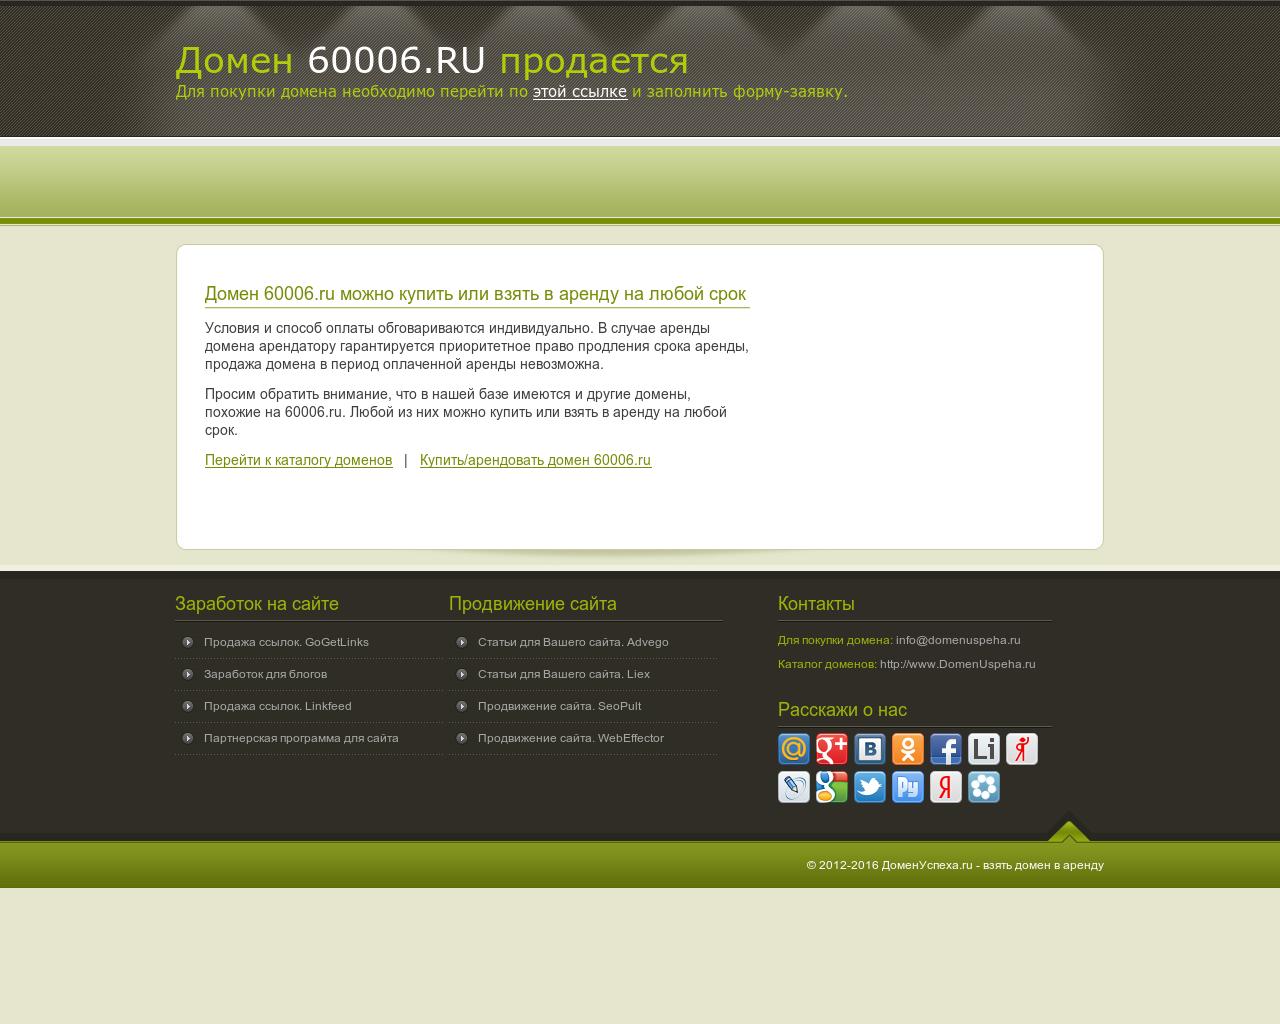 Изображение сайта 60006.ru в разрешении 1280x1024